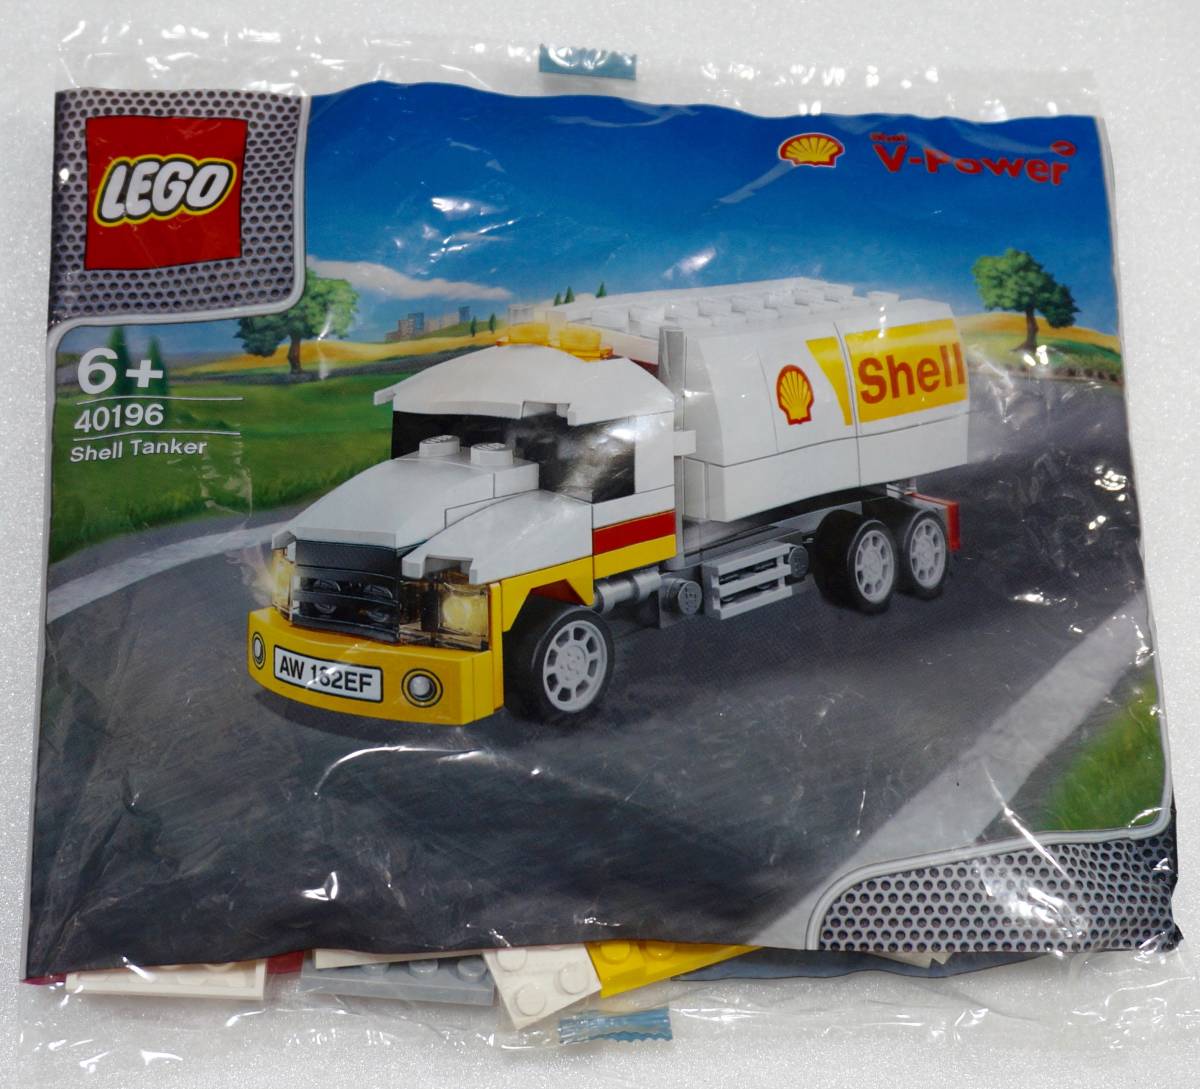 レゴ 40196 シェルタンクローリー 2014 The New Shell V-power Lego Collection Shell Tanker Limited Edition Sealedの画像1